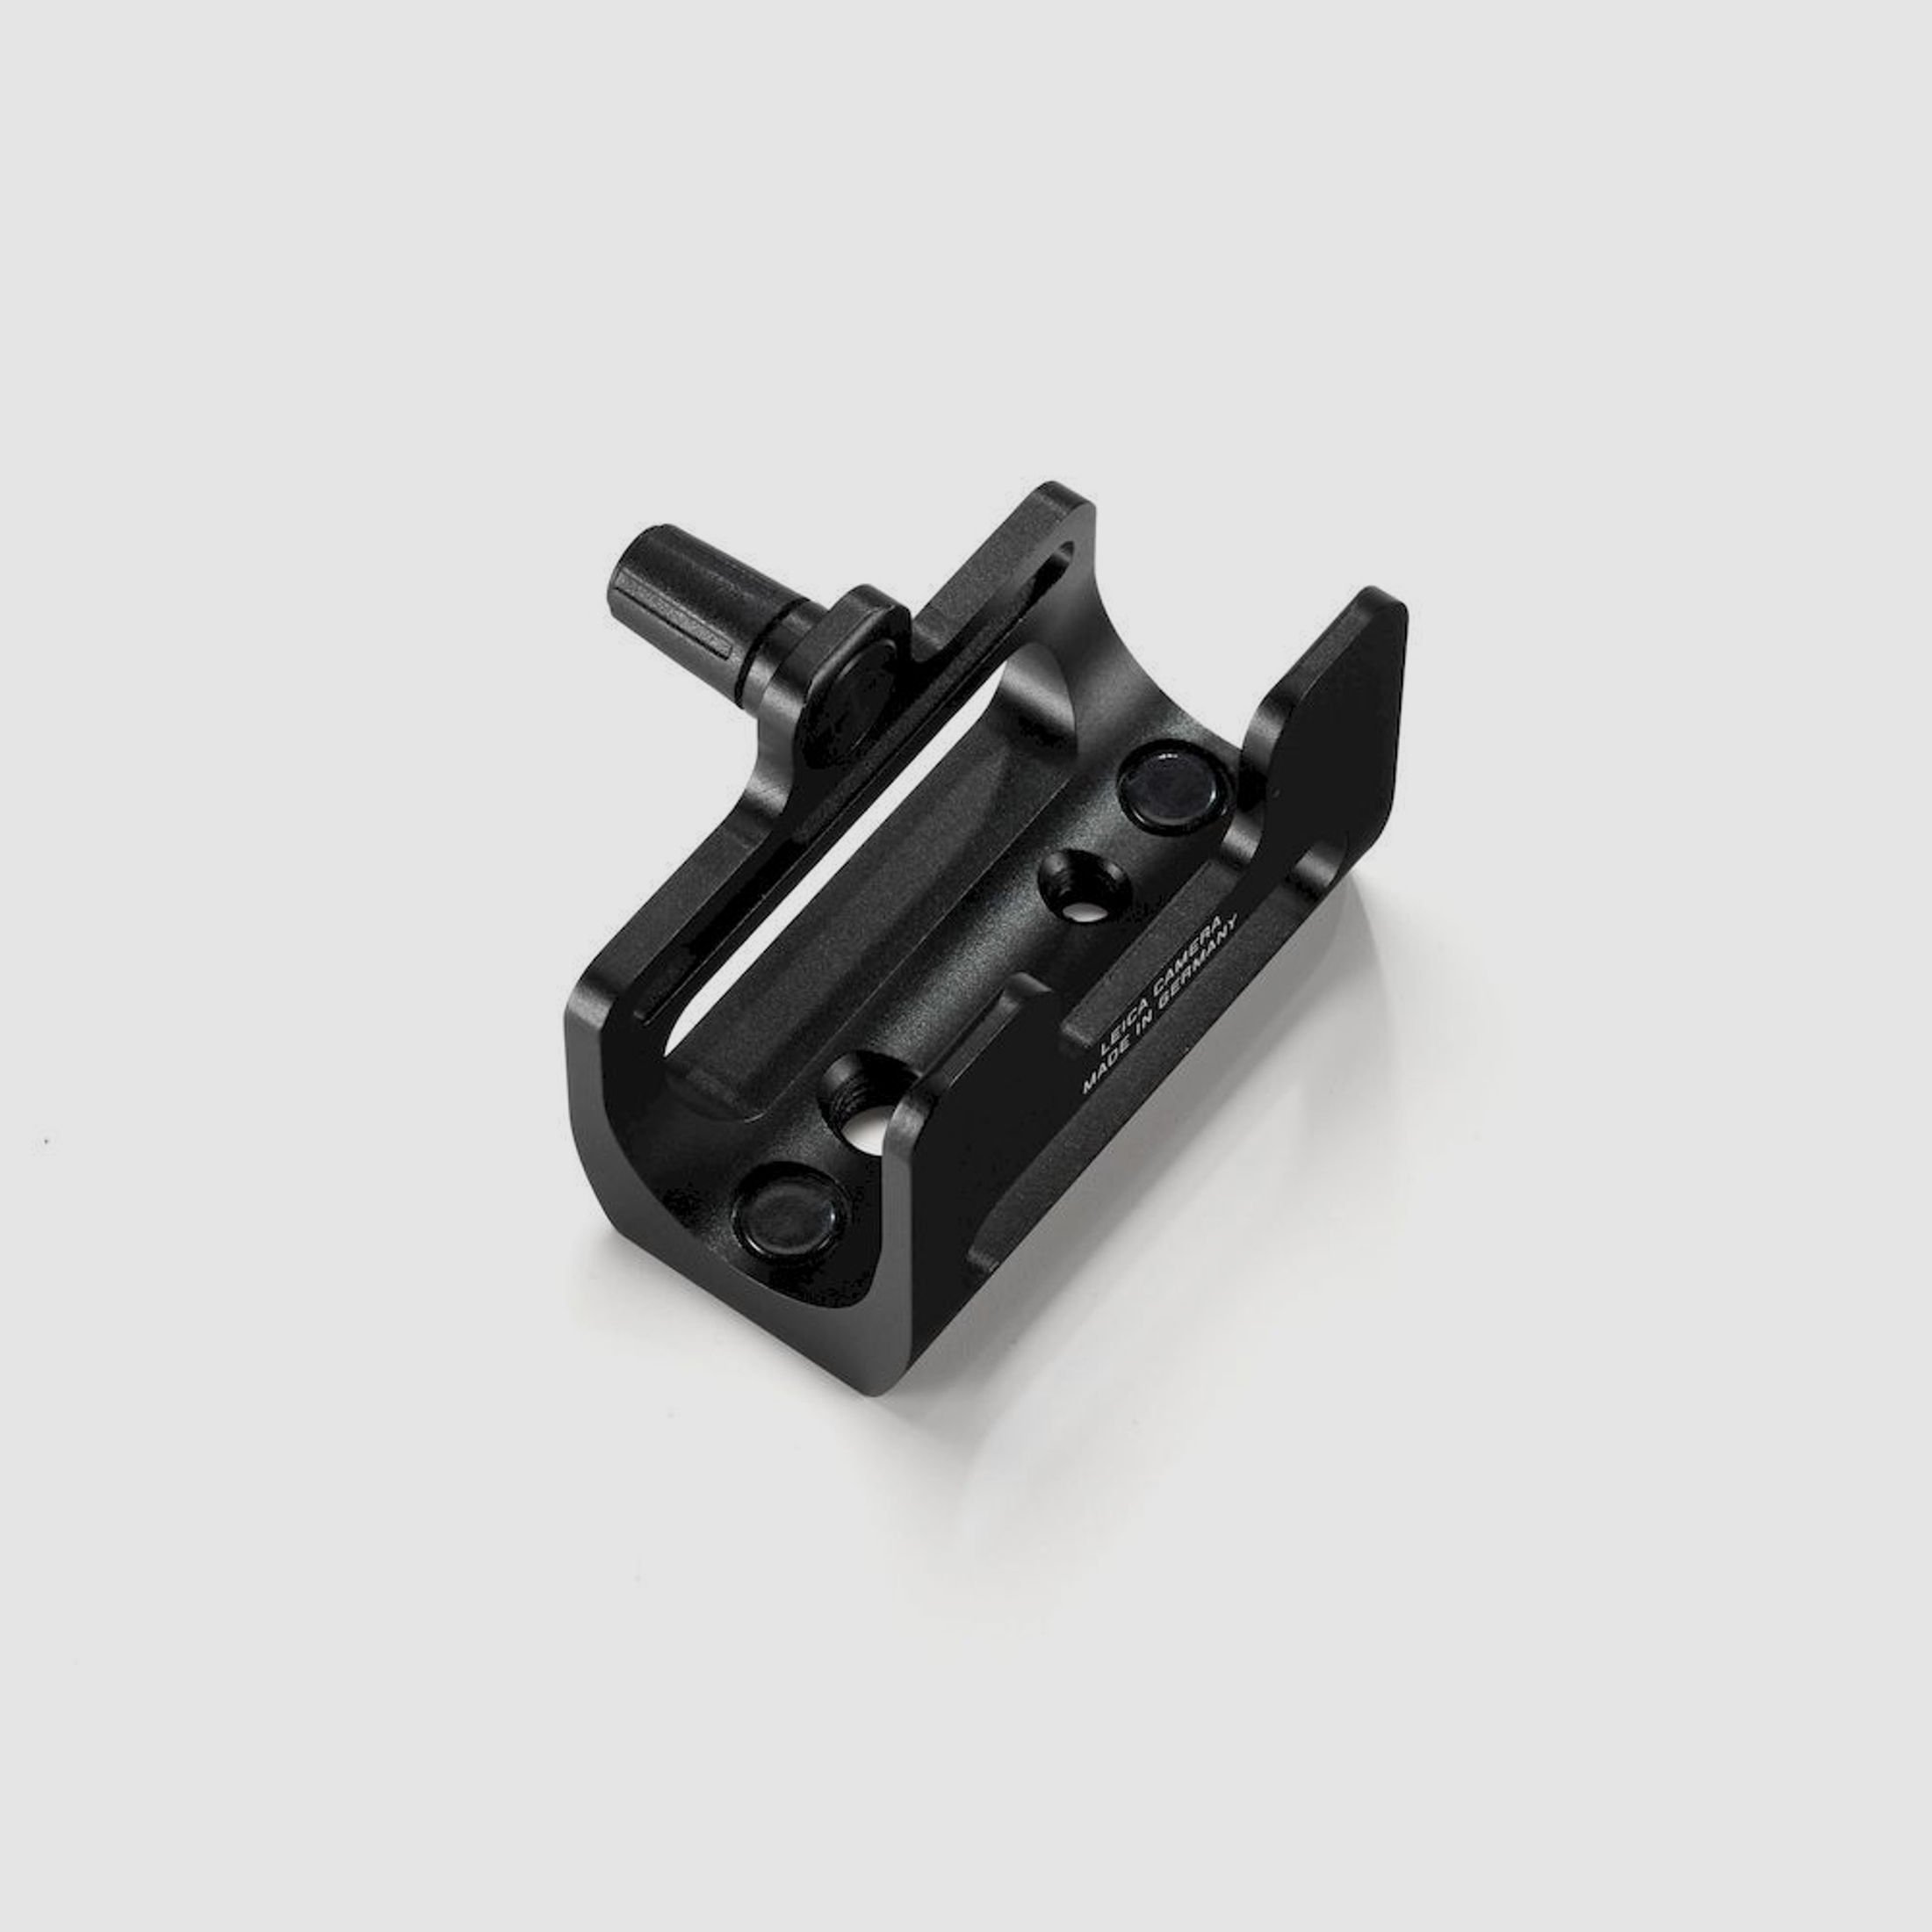 Leica Stativ Adapter für CRF Rangemaster